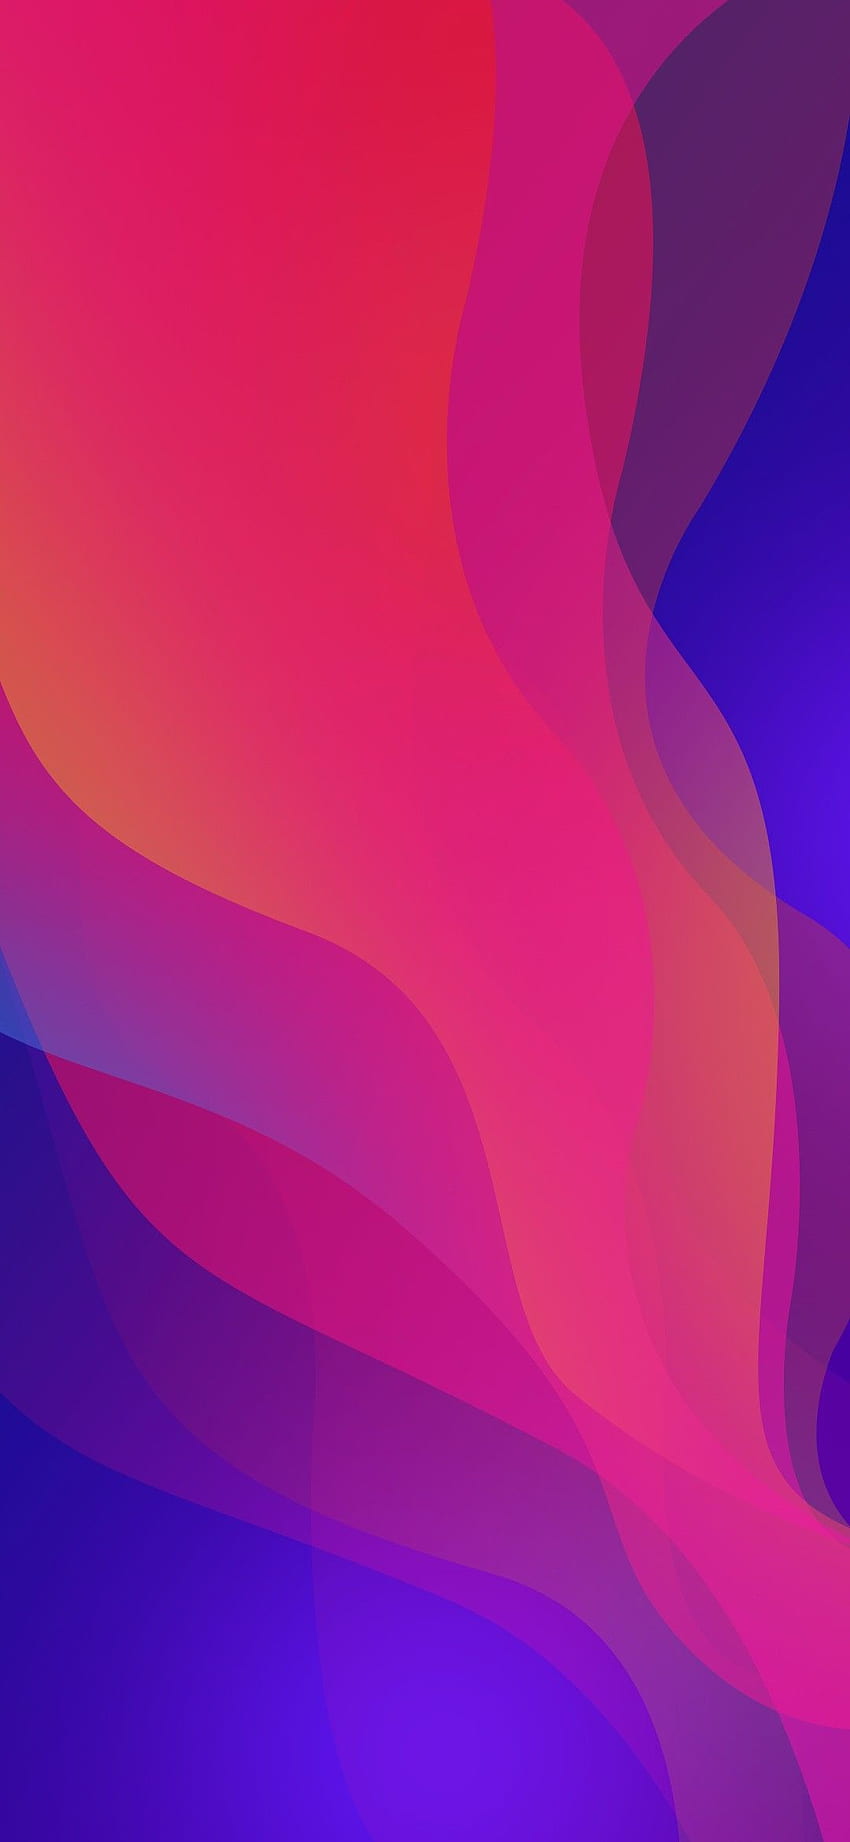 Oppo Find X - Amoled: Chiêm ngưỡng màn hình AMOLED tuyệt đẹp của Oppo Find X, giúp bạn trải nghiệm hình ảnh sắc nét, độ tương phản cao và màu sắc sống động. Chất lượng hình ảnh hoàn hảo cùng công nghệ hiện đại sẽ làm say mê bất cứ ai từ lần đầu tiên nhìn thấy.